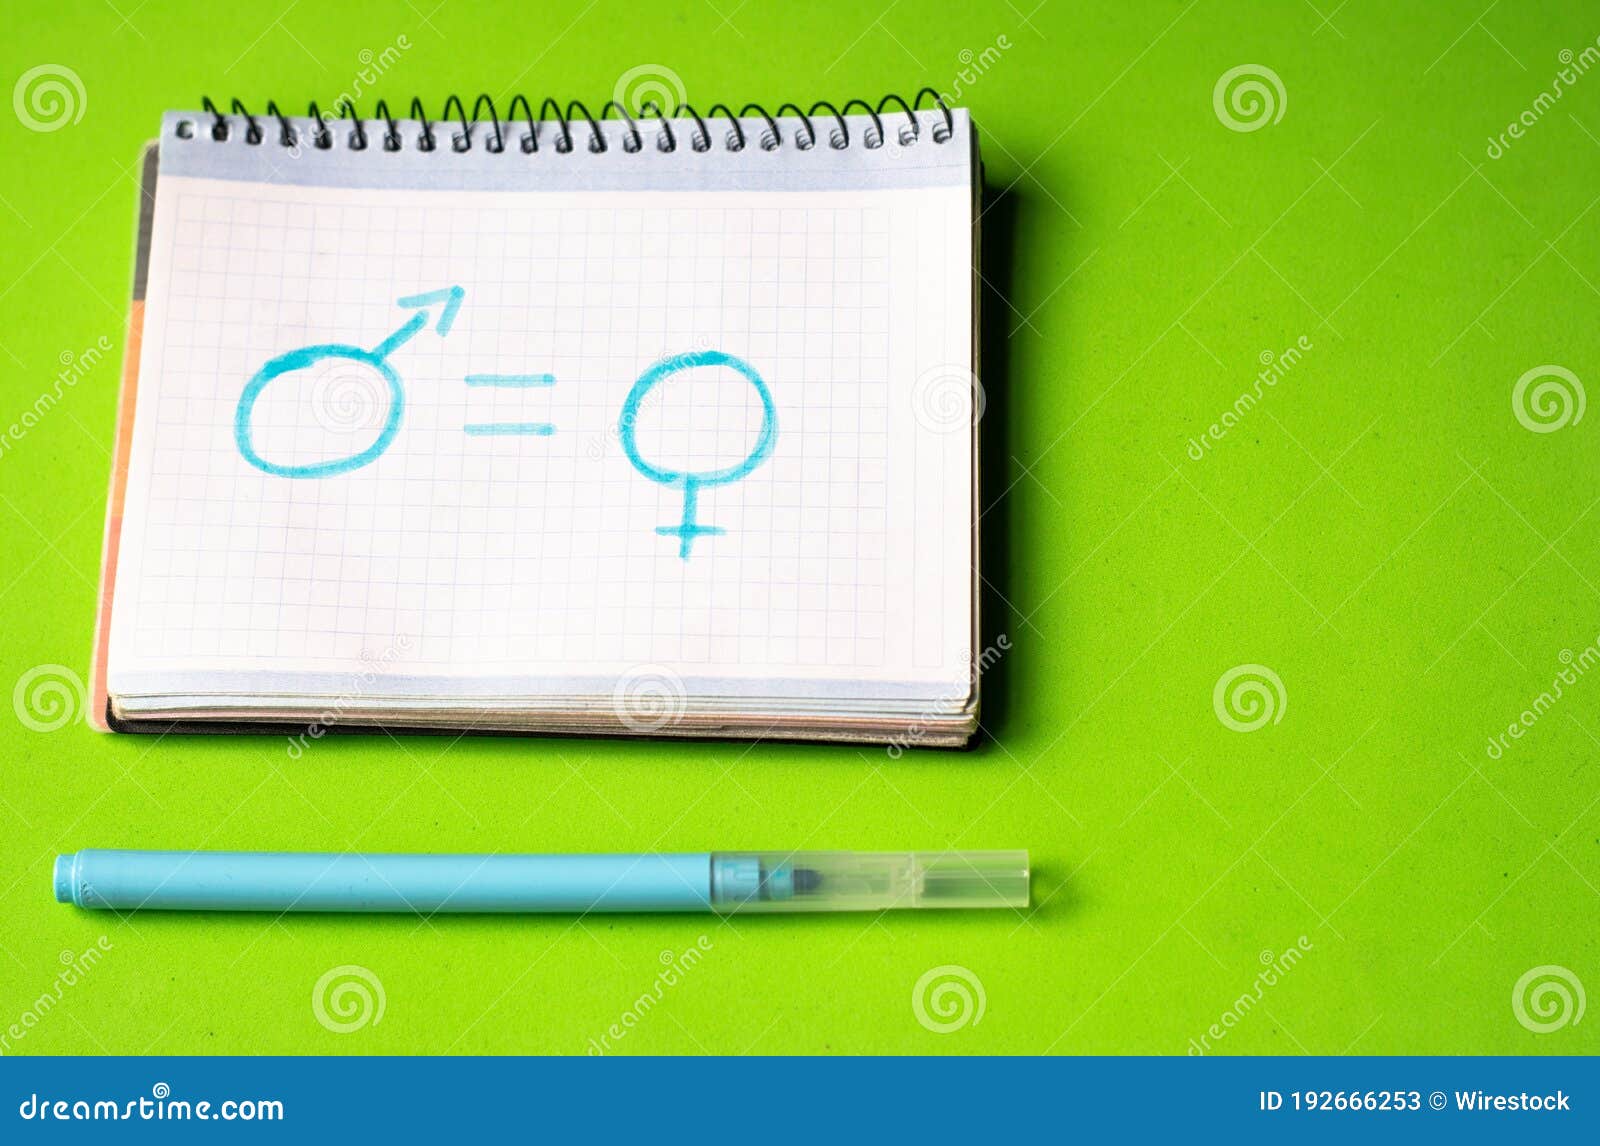 Dibujo Sobre Igualdad De Género En Una Página Blanca Del Cuaderno En Un  Escritorio Verde Imagen de archivo - Imagen de azul, papel: 192666253